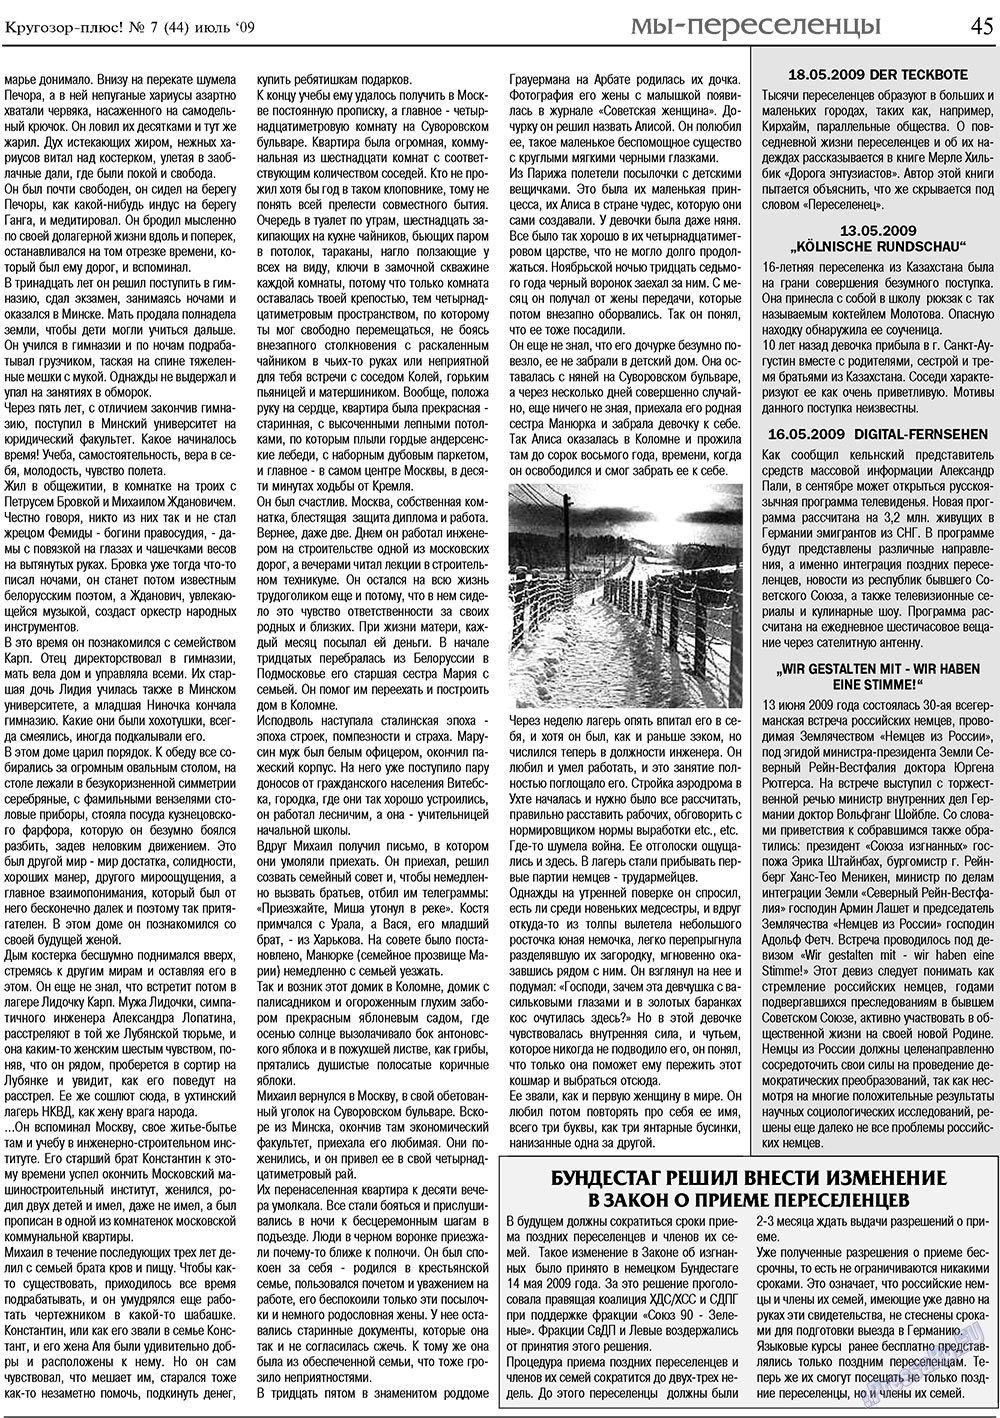 Кругозор плюс!, газета. 2009 №7 стр.45